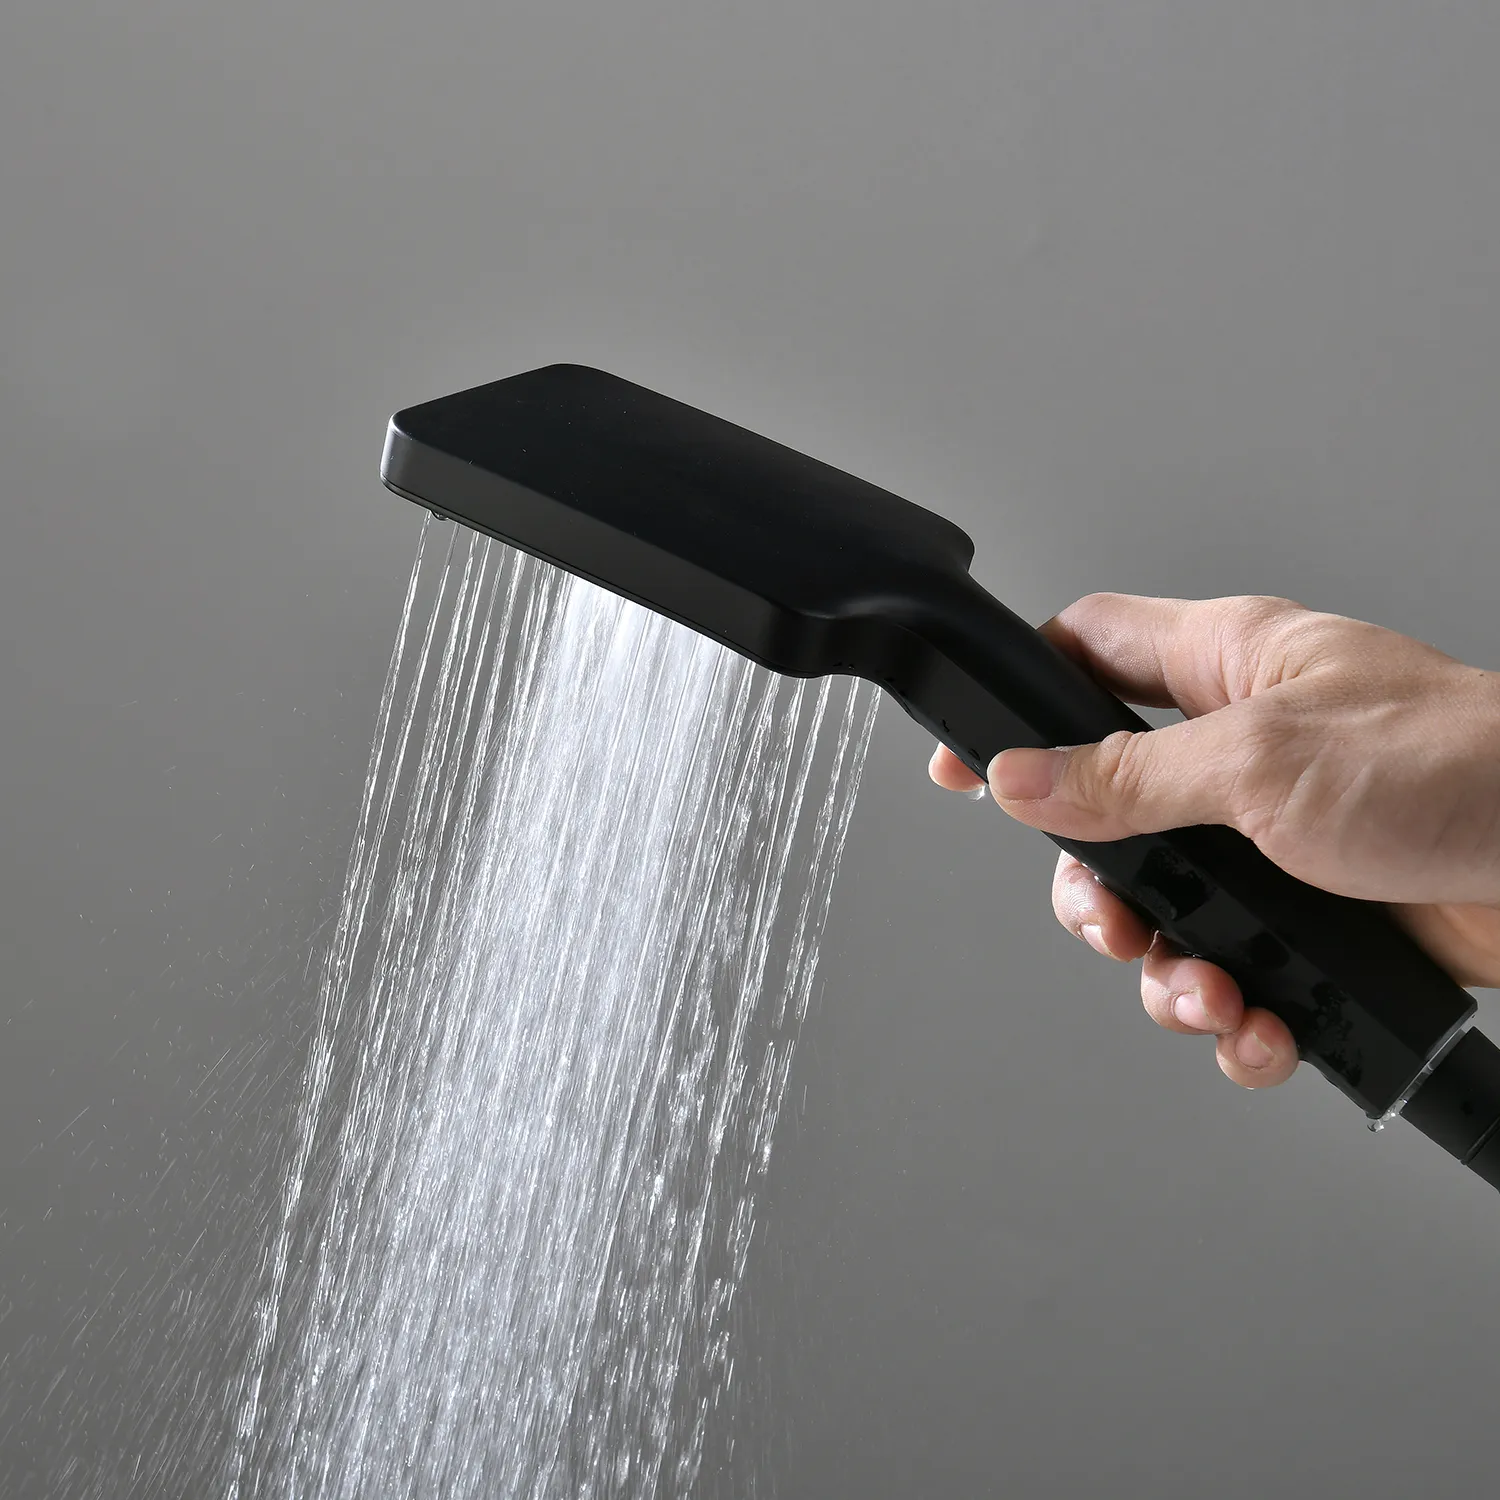 Högkvalitativ svart massage 16/20 tum duschhuvudspanel Regn Rainfall Spa Spray LECH Duschkranuppsättning Termostatventilblandare System